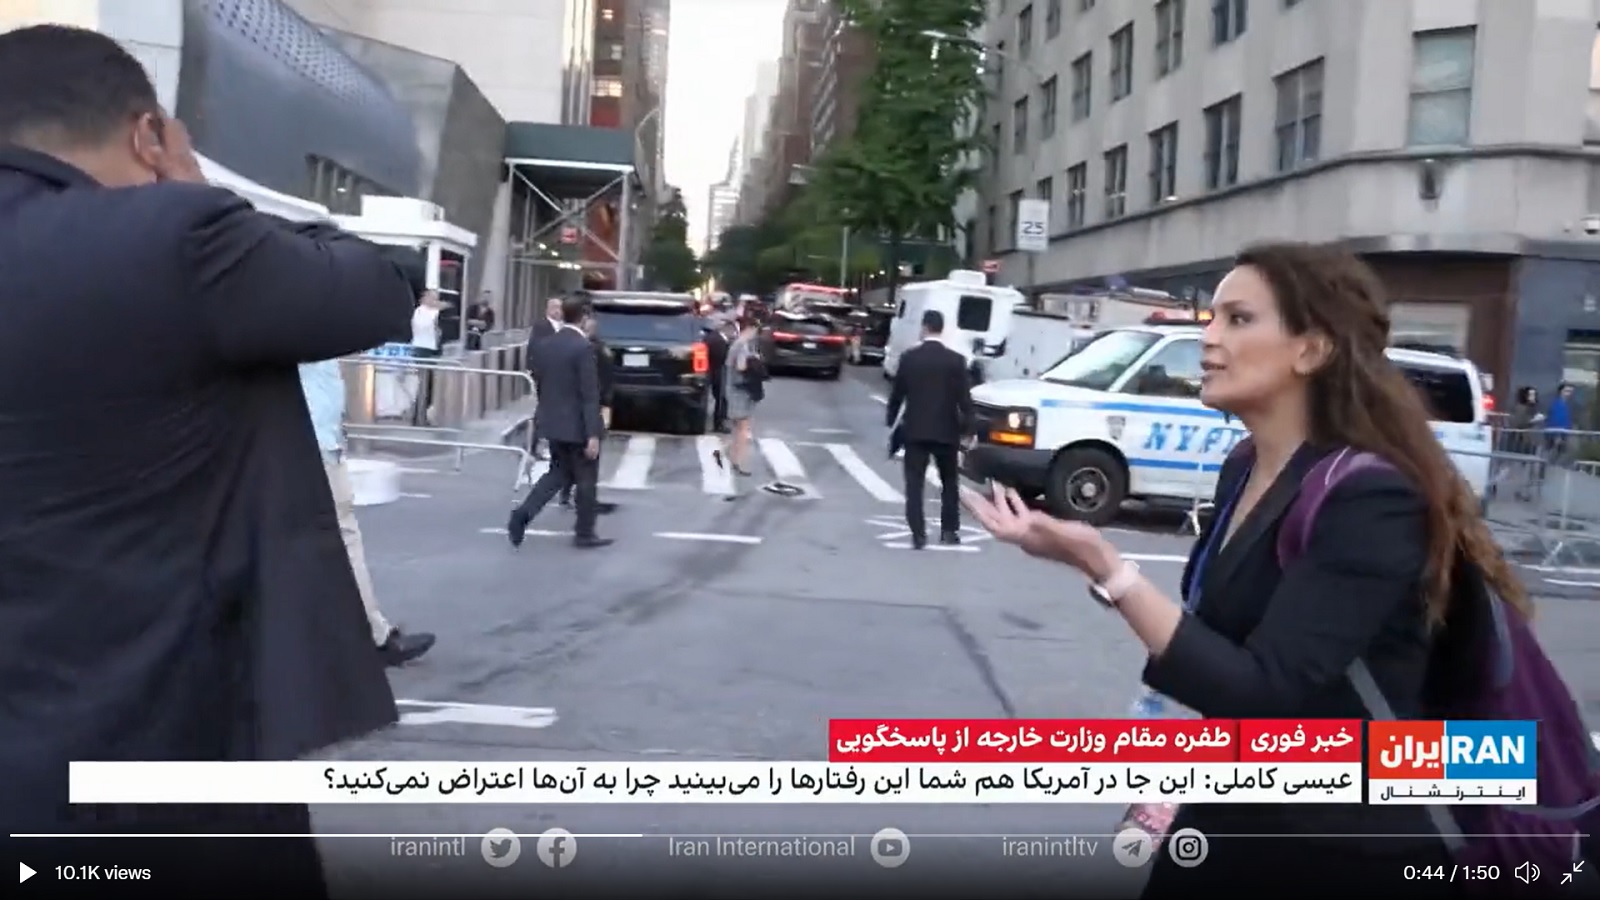 نيويورك: مسؤول إيراني يهرب من أسئلة صحافية مُعارضة